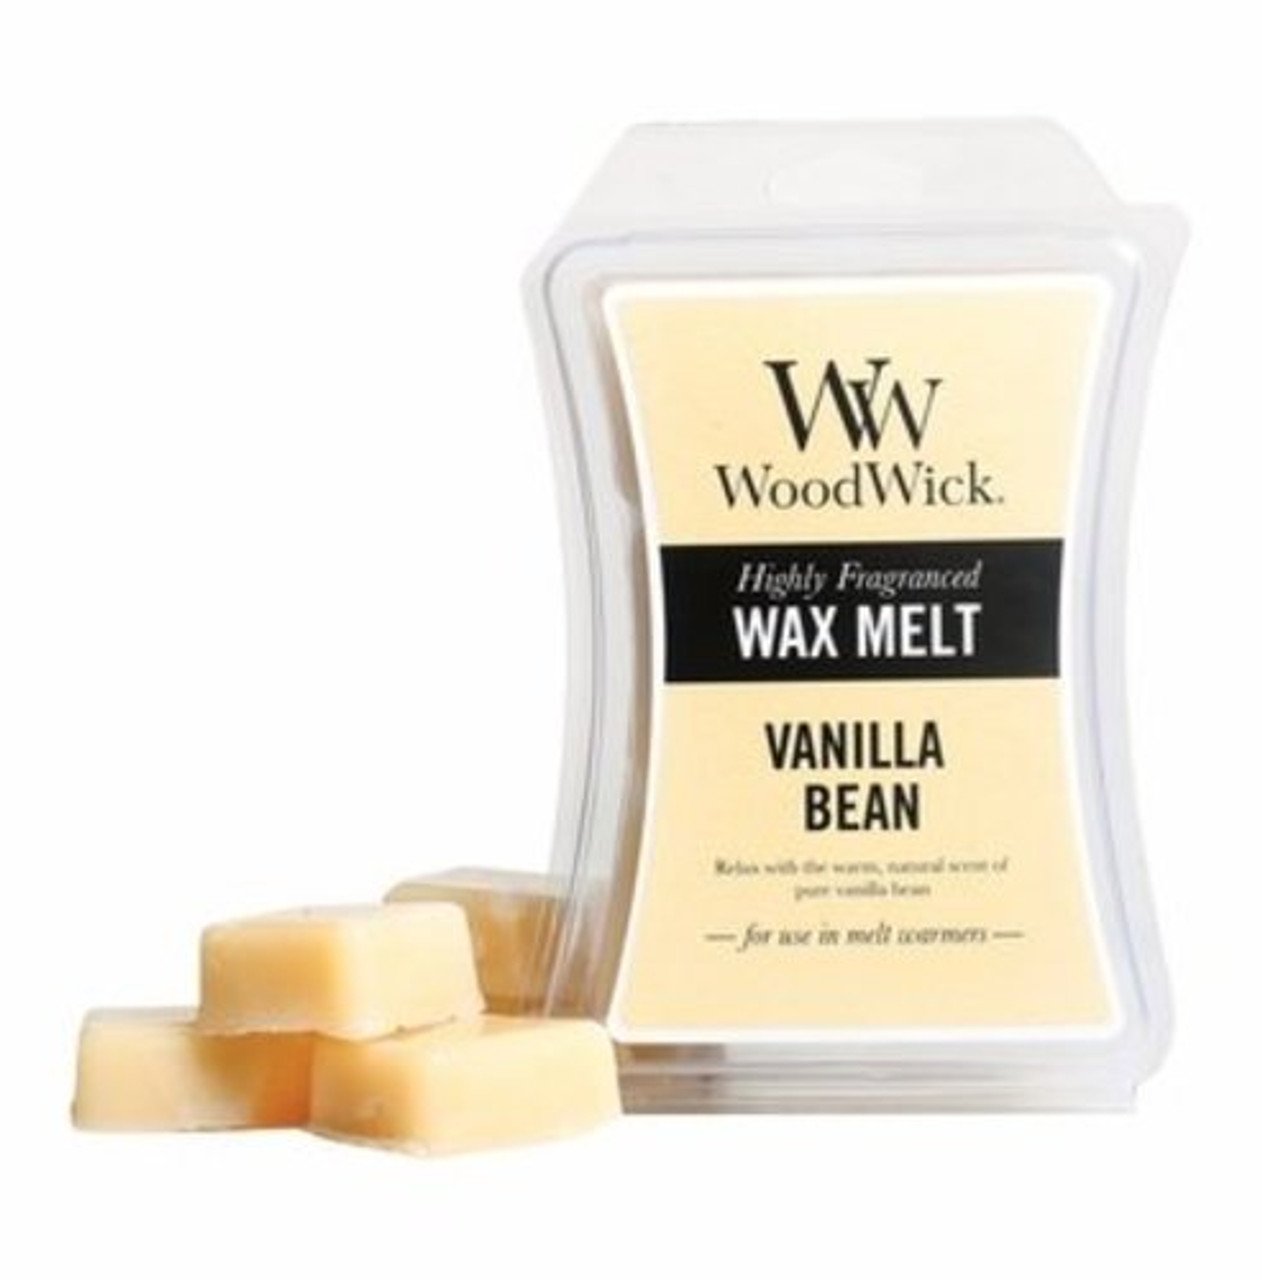 WoodWick Pumpkin Butter - Wax Melt, 3 oz.